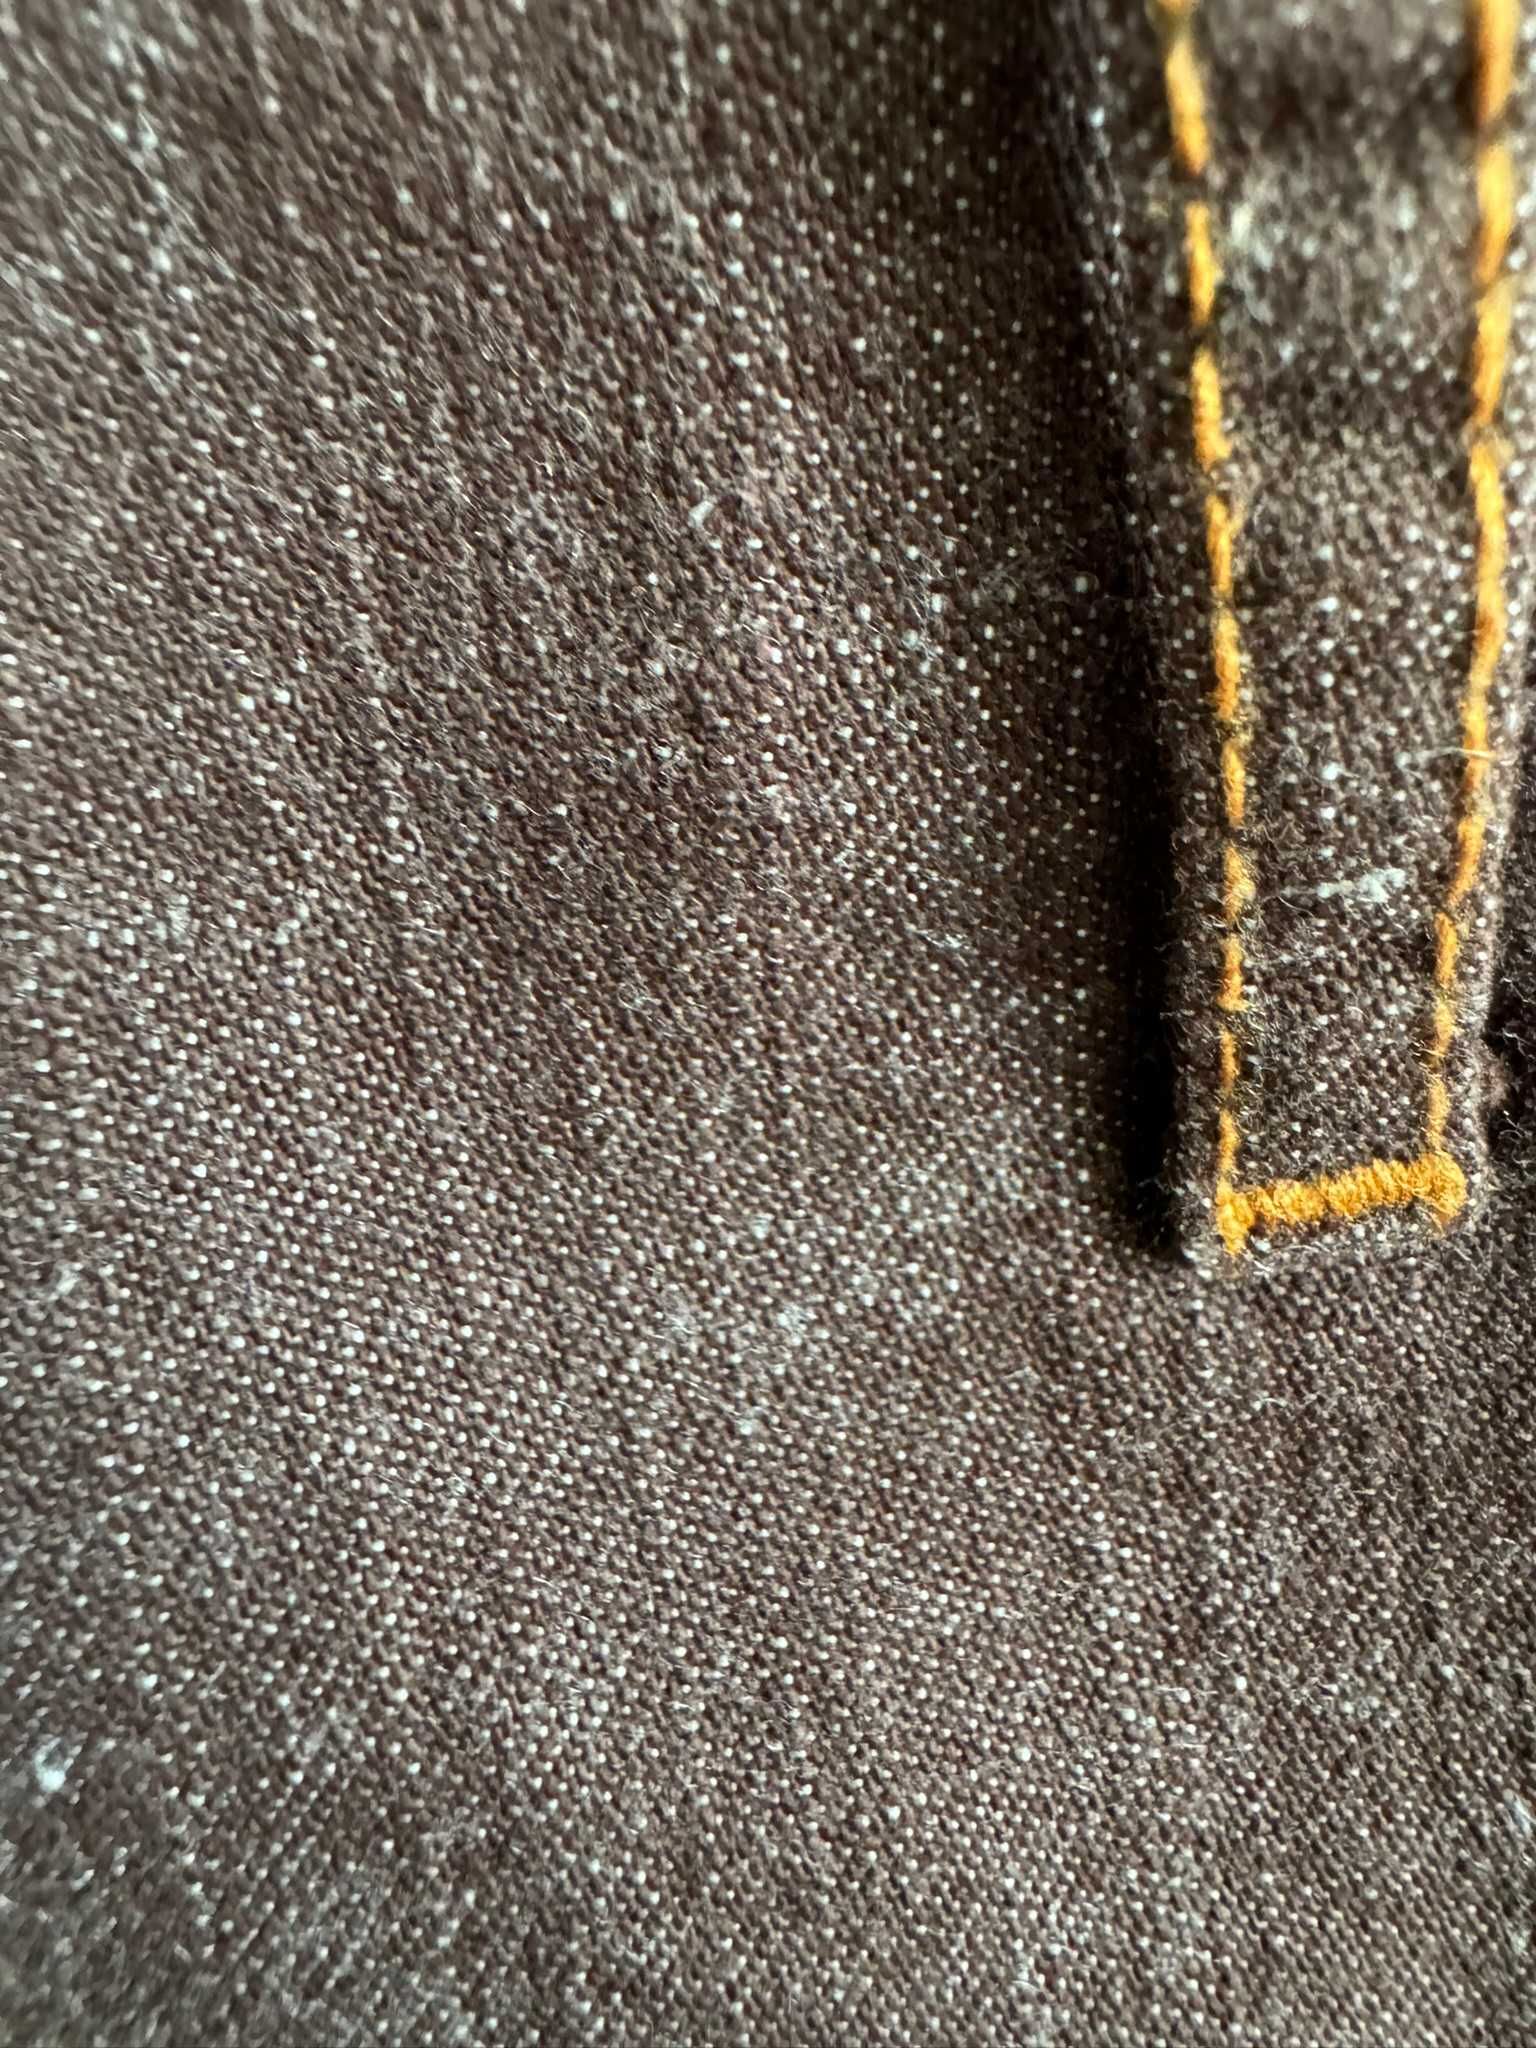 Spódnica jeansowa brązowa r.42 długa